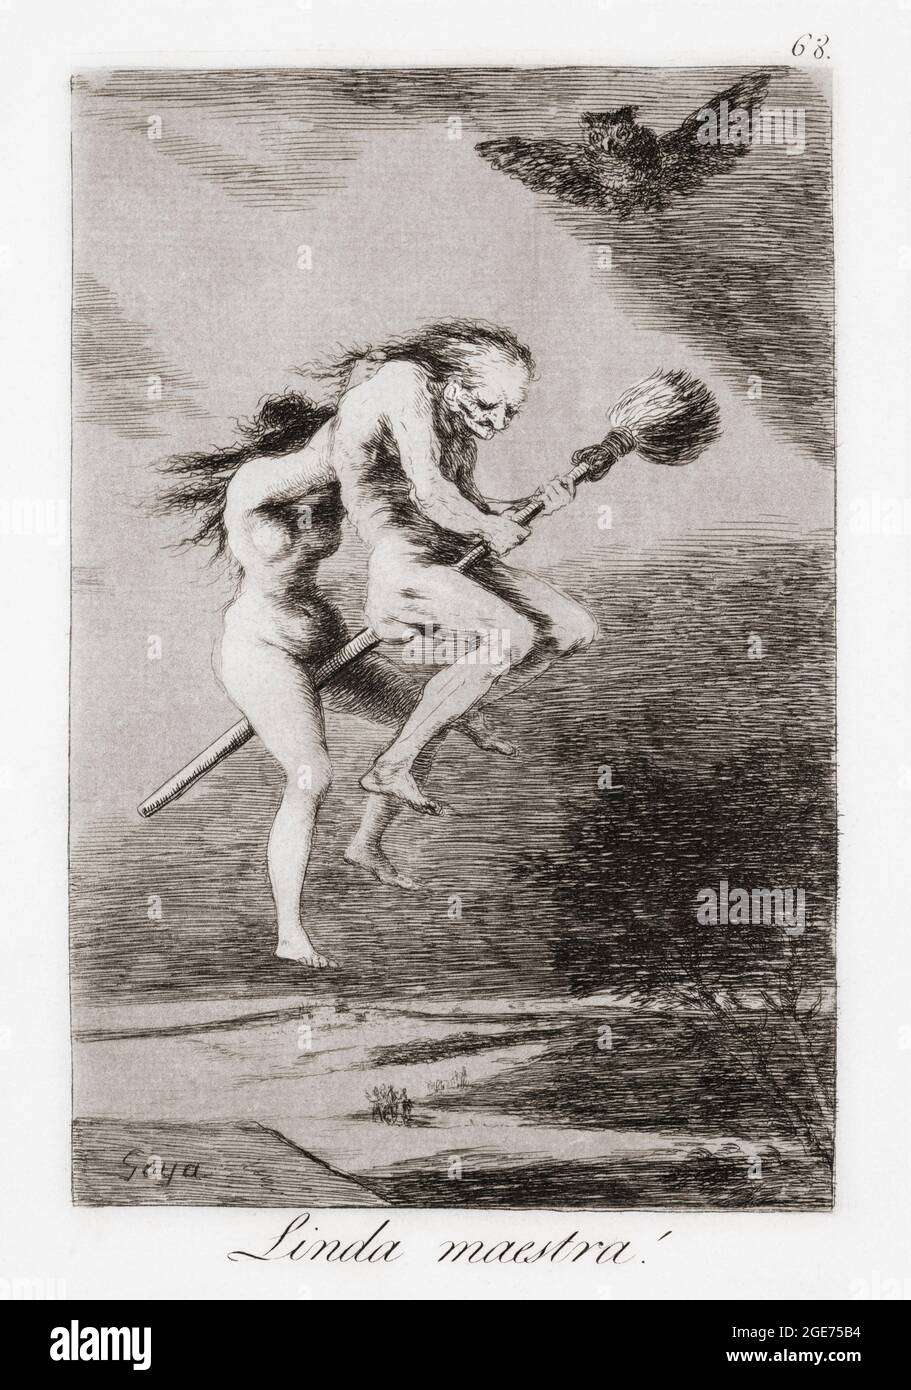 Linda Maestra! Ou joli professeur! Une jeune sorcière enseigne à un vieil homme à voler. Après le travail de Francisco Goya, Capricho numéro 68. Goya a créé les 80 tirages de Los Caprichos en 1797-1798. Banque D'Images